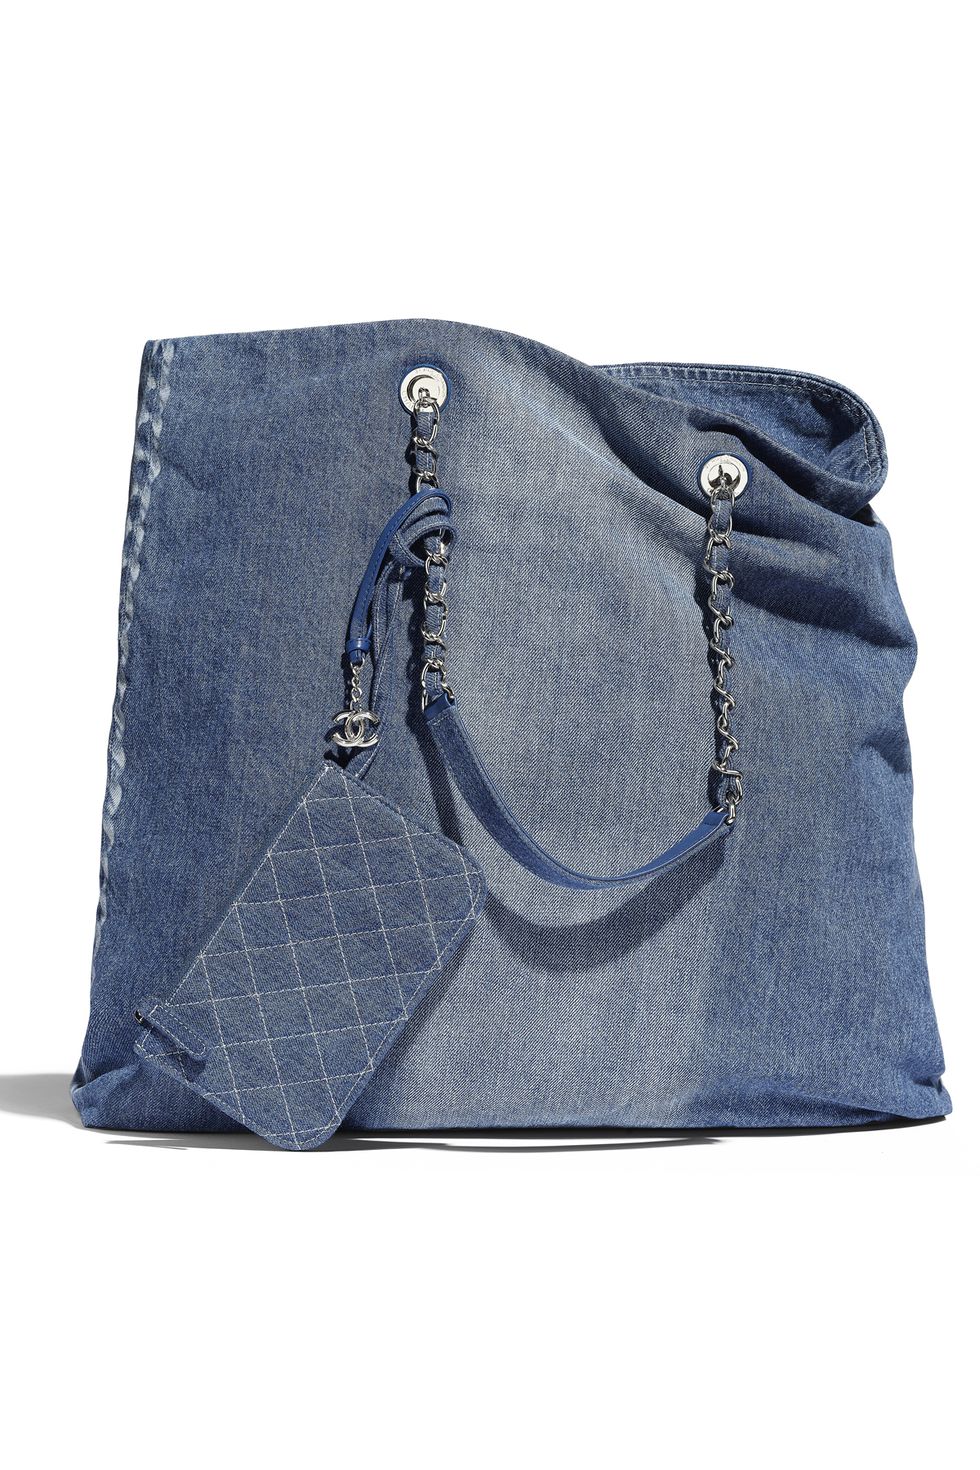 Blue, Bag, Handbag, Denim, Fashion accessory, Electric blue, Jeans, Leather, Beige, Textile, 